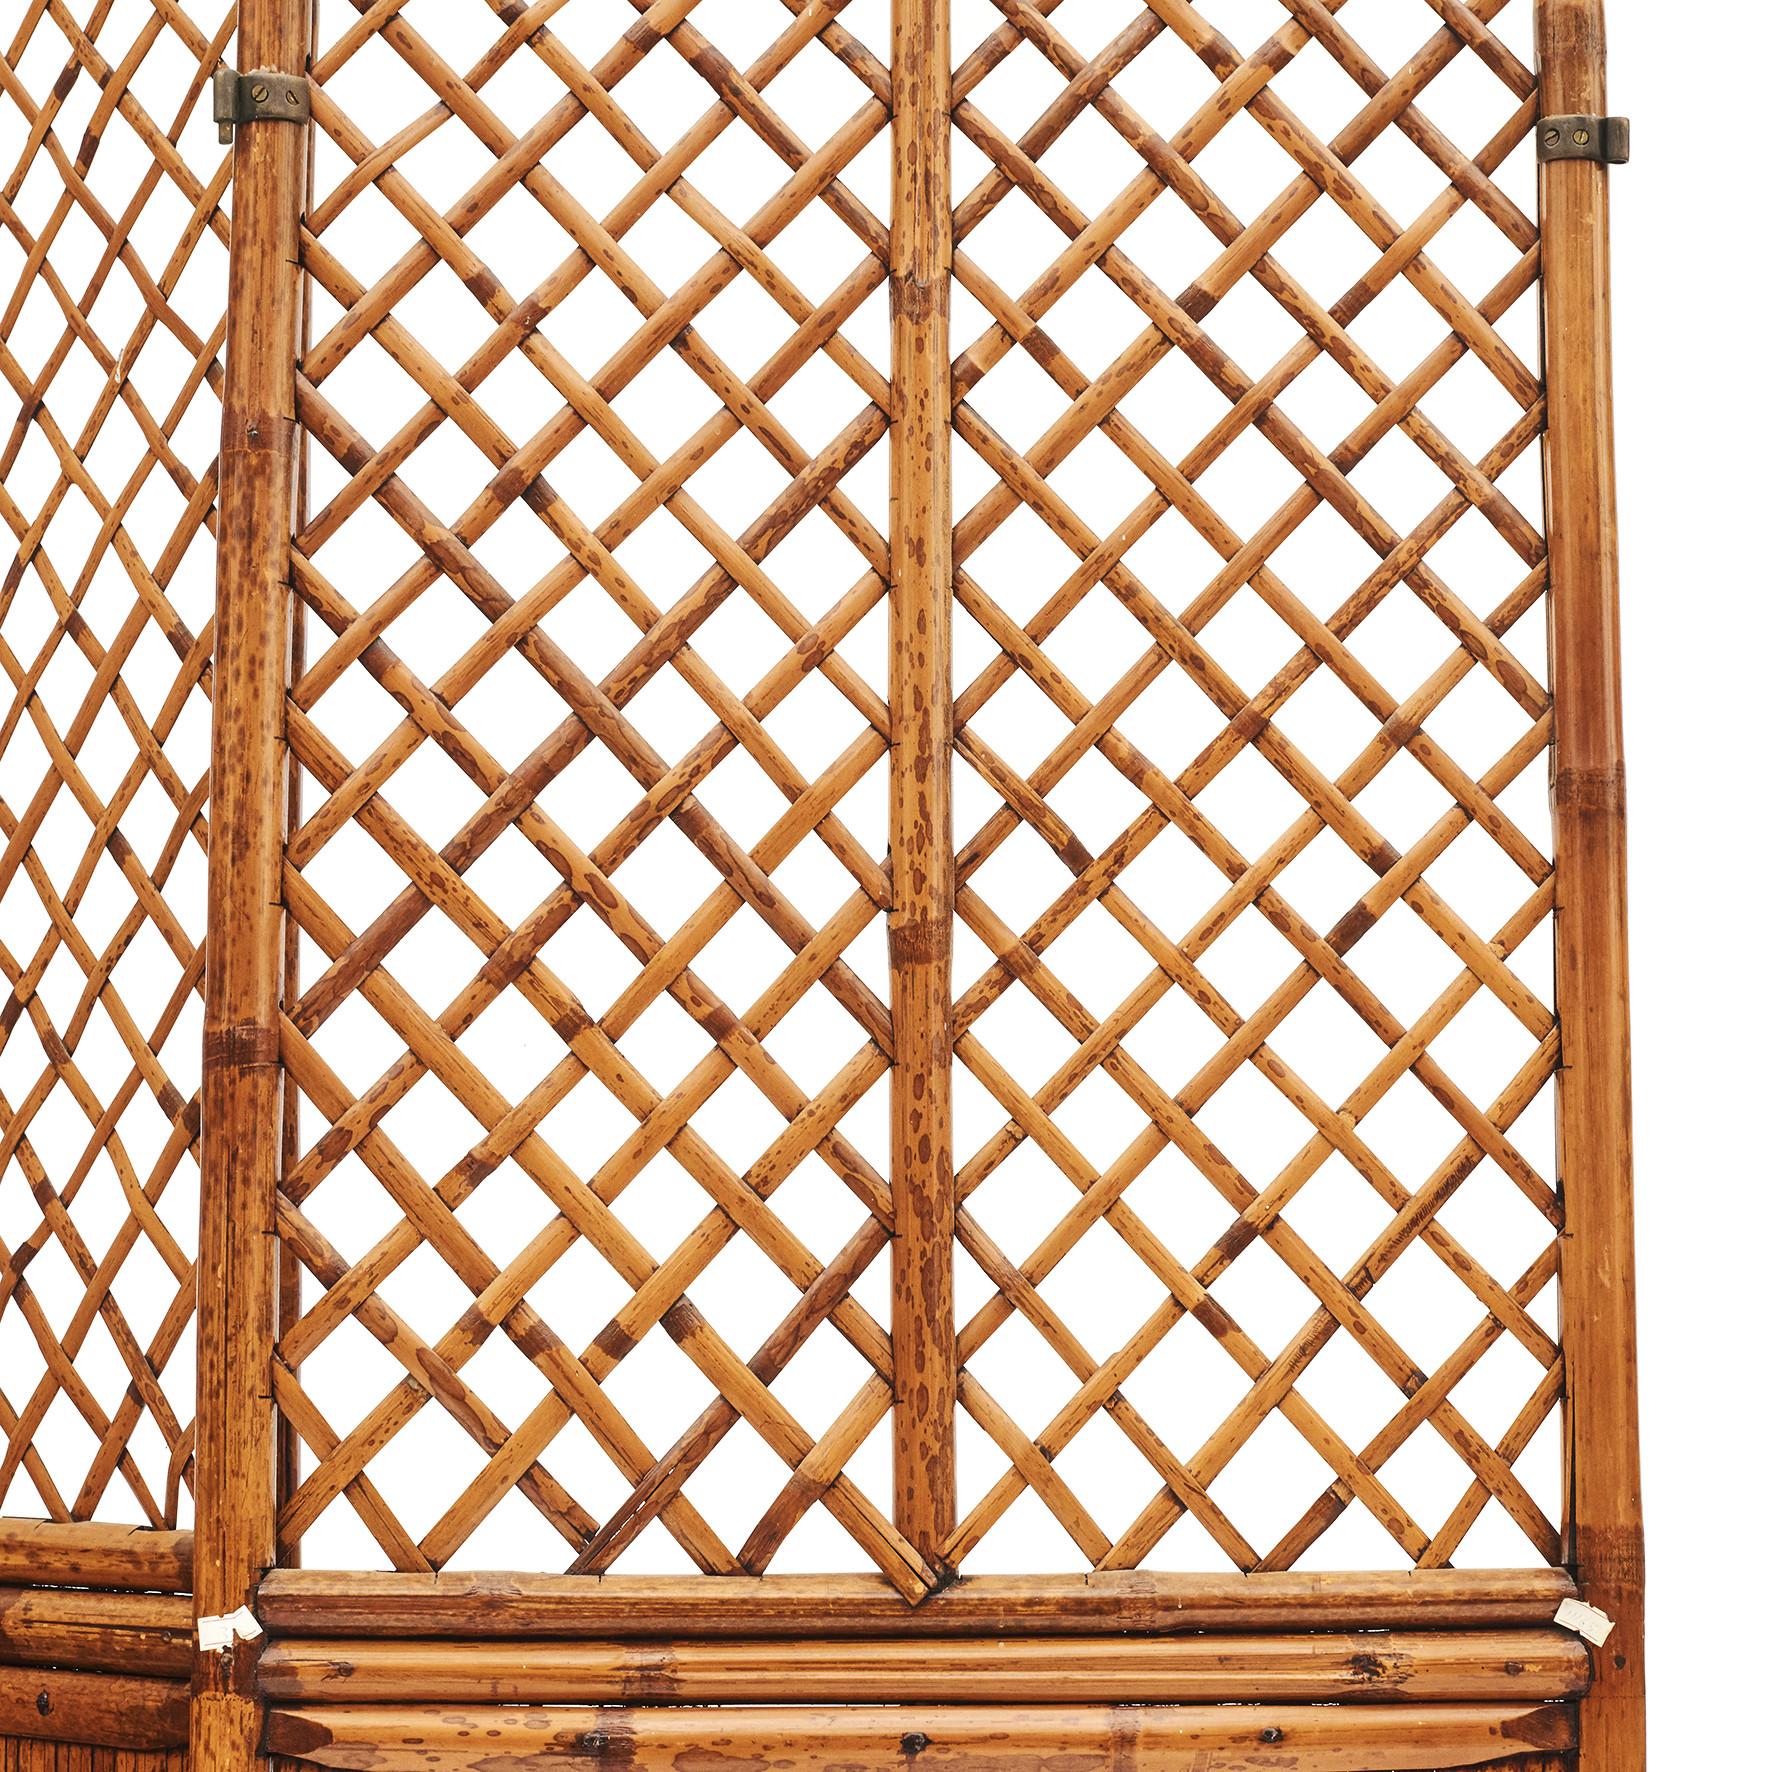 Chinesischer dreiteiliger Gitterschirm oder Raumteiler (je 245 x 55 x 4 cm.)
Hergestellt aus Bambus
Originalzustand mit einer schönen, natürlich gealterten Patina, die durch eine Klarlackierung hervorgehoben wird.
China, ca. 1820-1840.